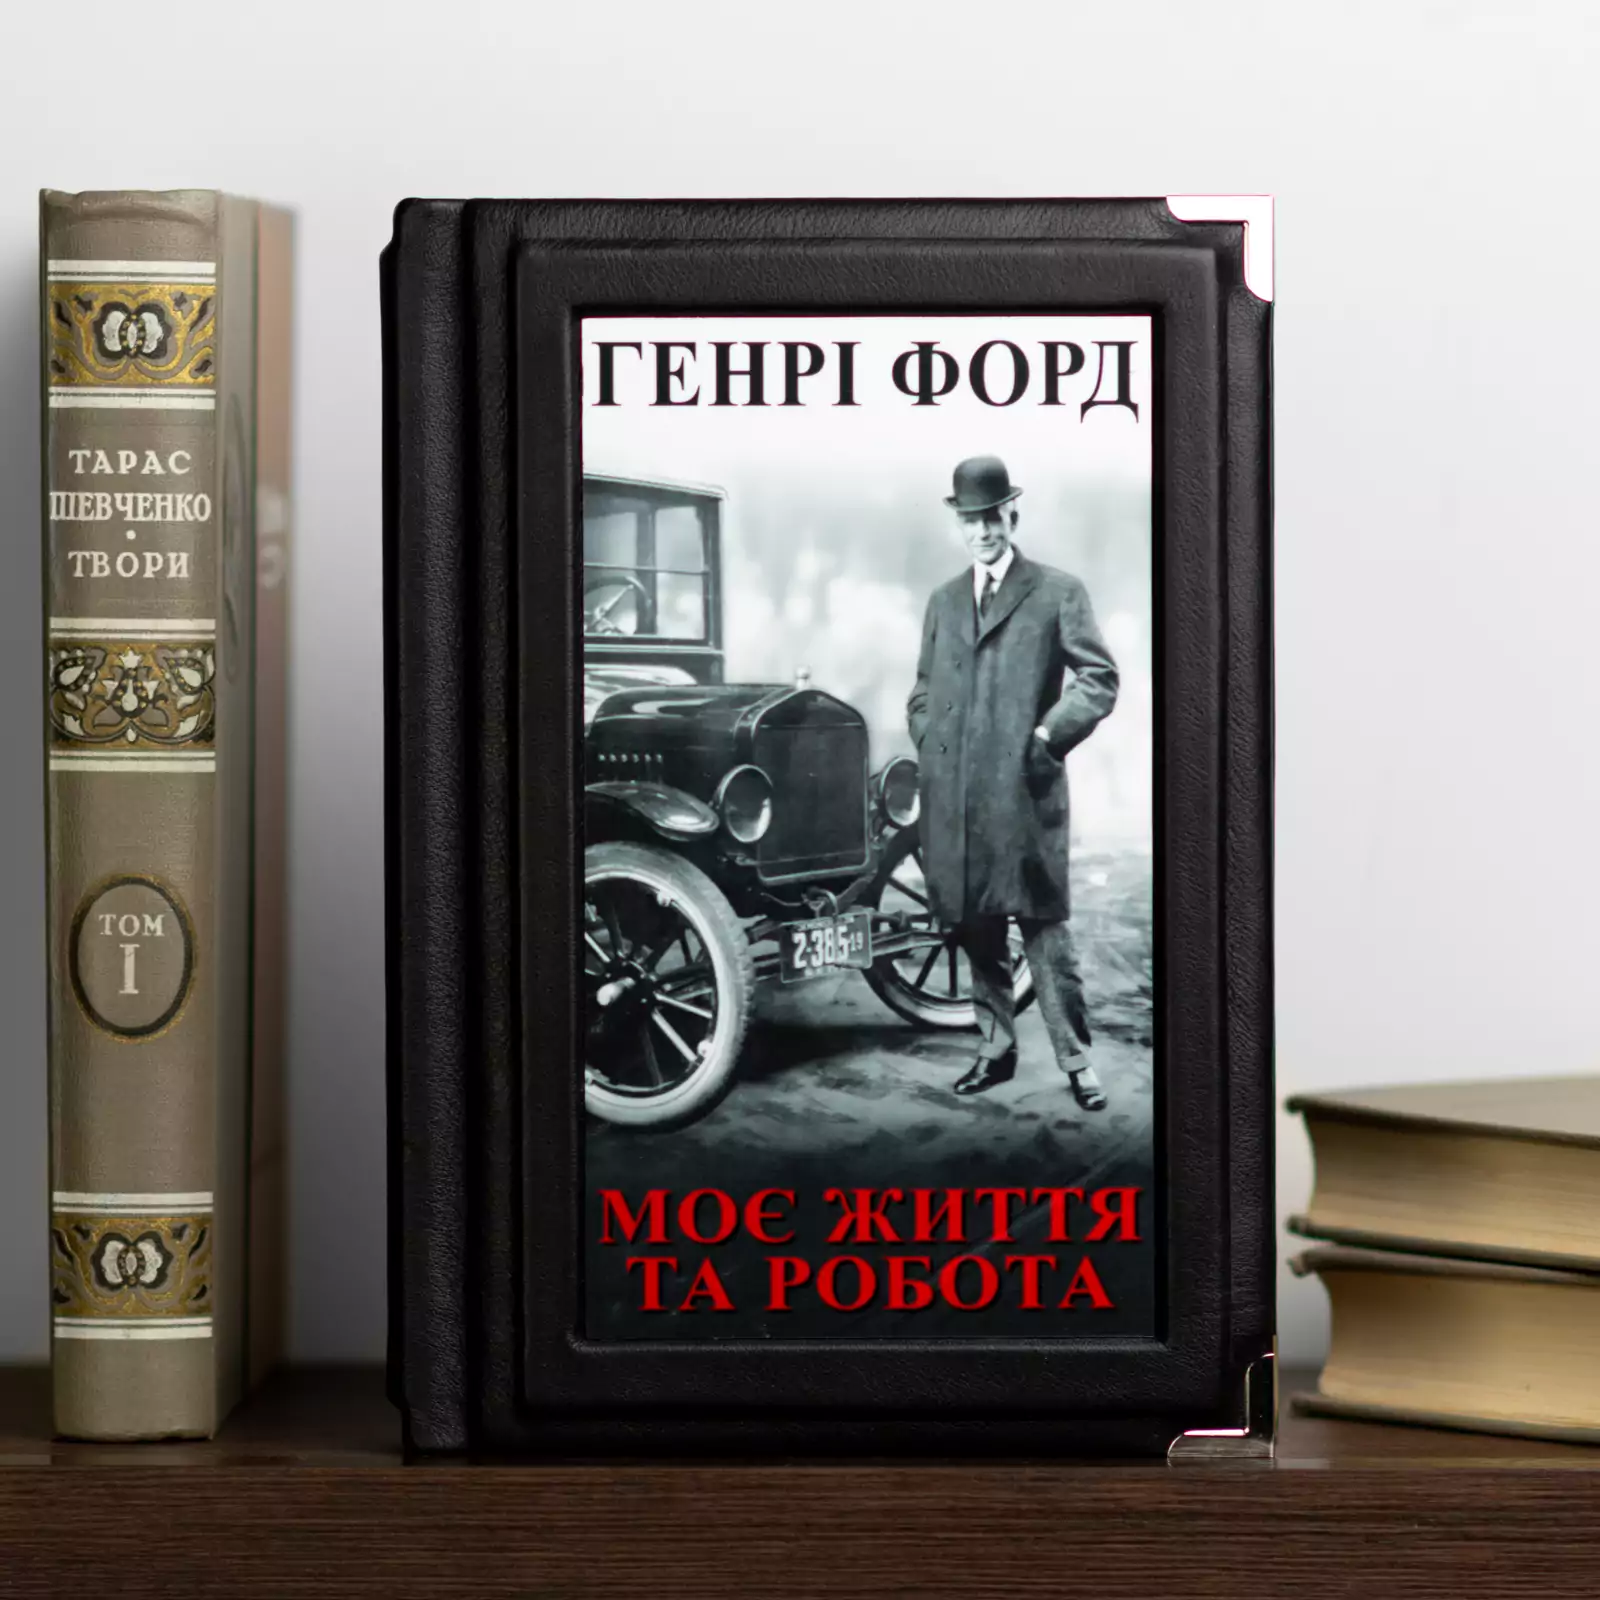 Книга Генри Форда "Моя жизнь и работа", кожаная обложка (на украинском языке)